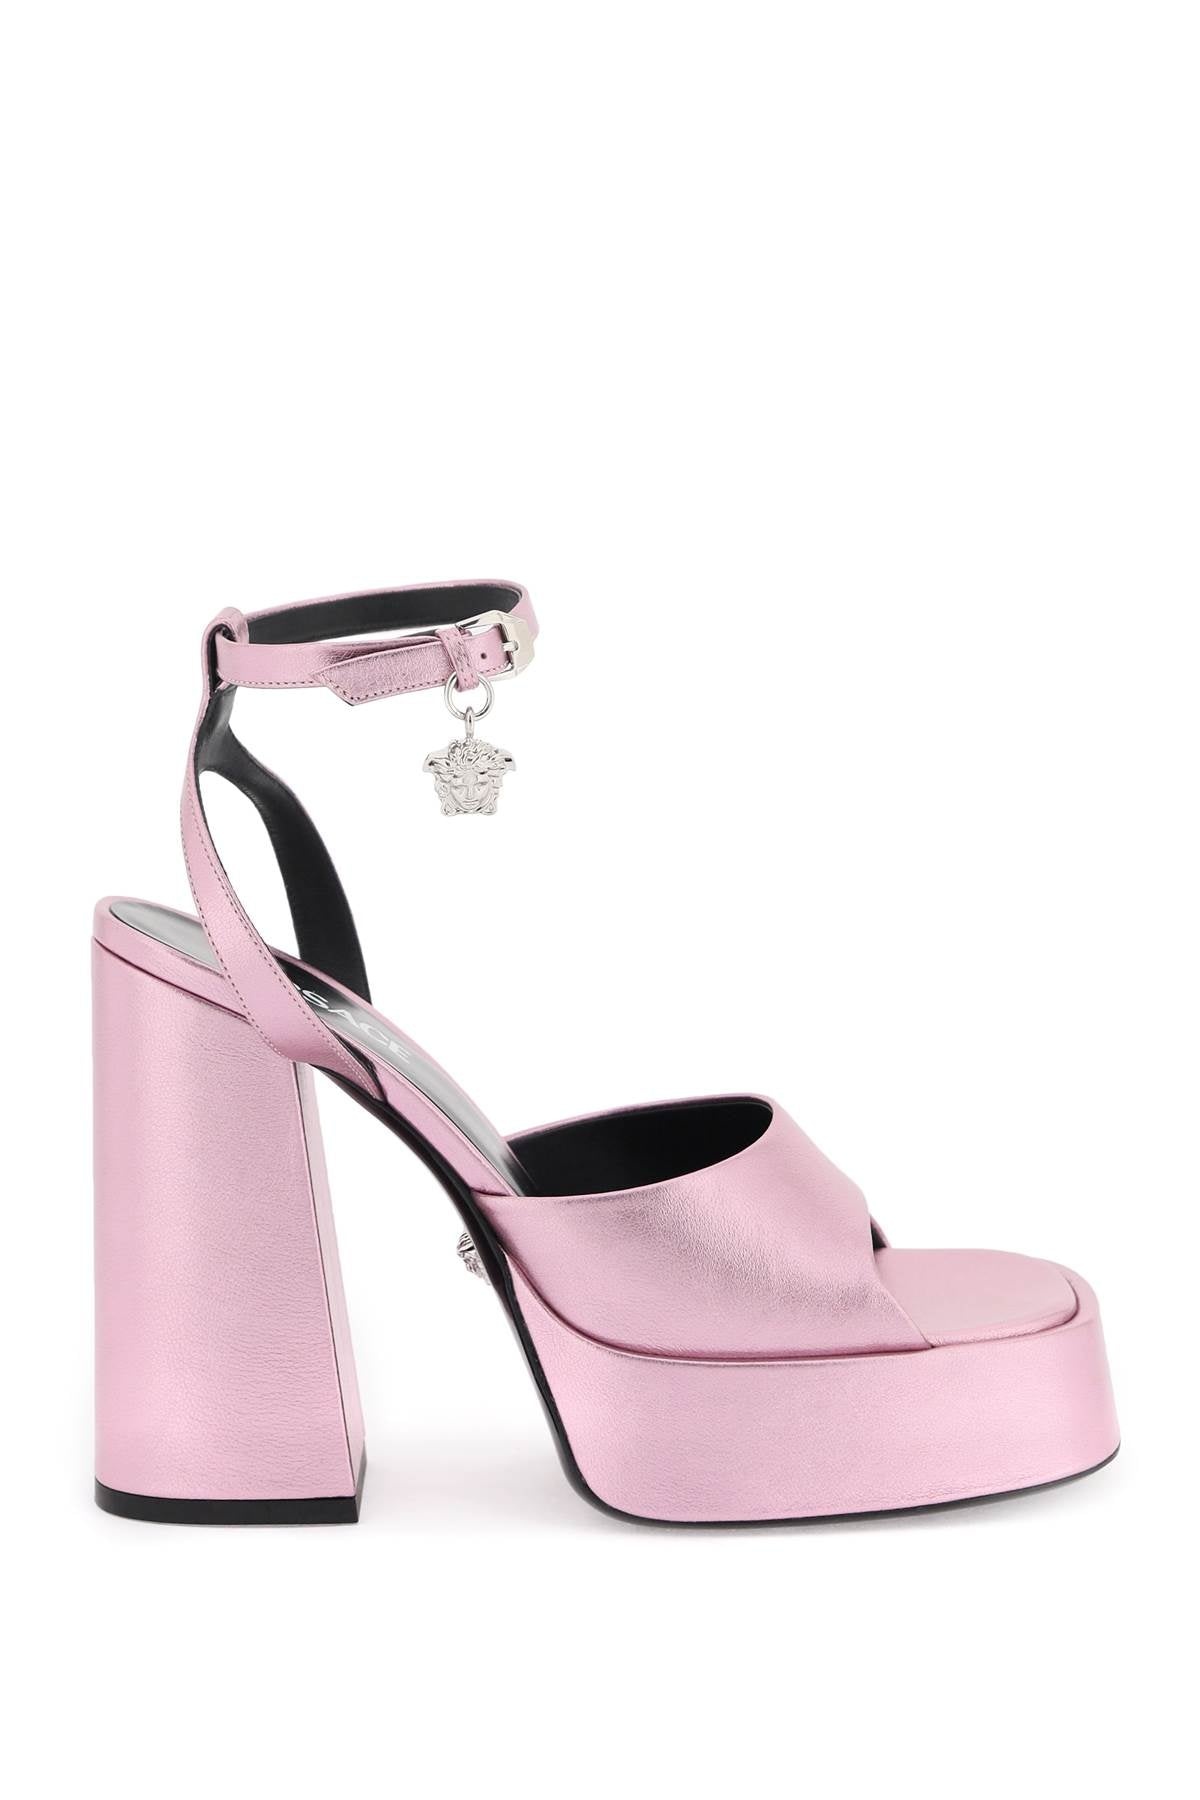 Versace 'Aevitas' Sandals Women - 1